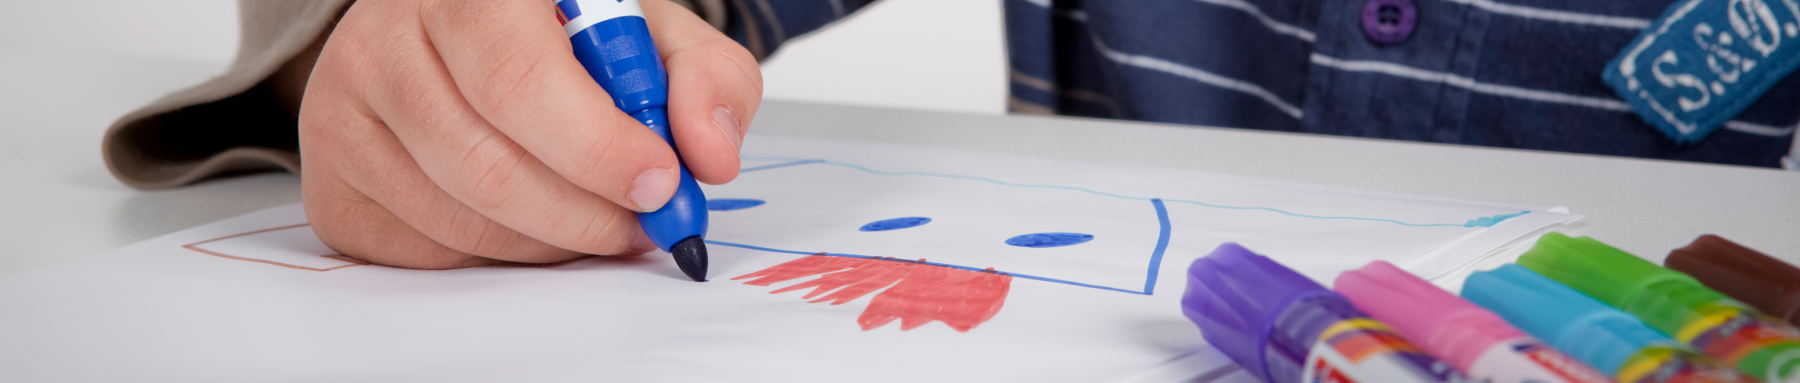 Die Hand eines Kindes, die einen blauen Stift hält, zeichnet ein lächelndes Gesicht auf ein Blatt Papier, umgeben von einer Reihe bunter Stifte.